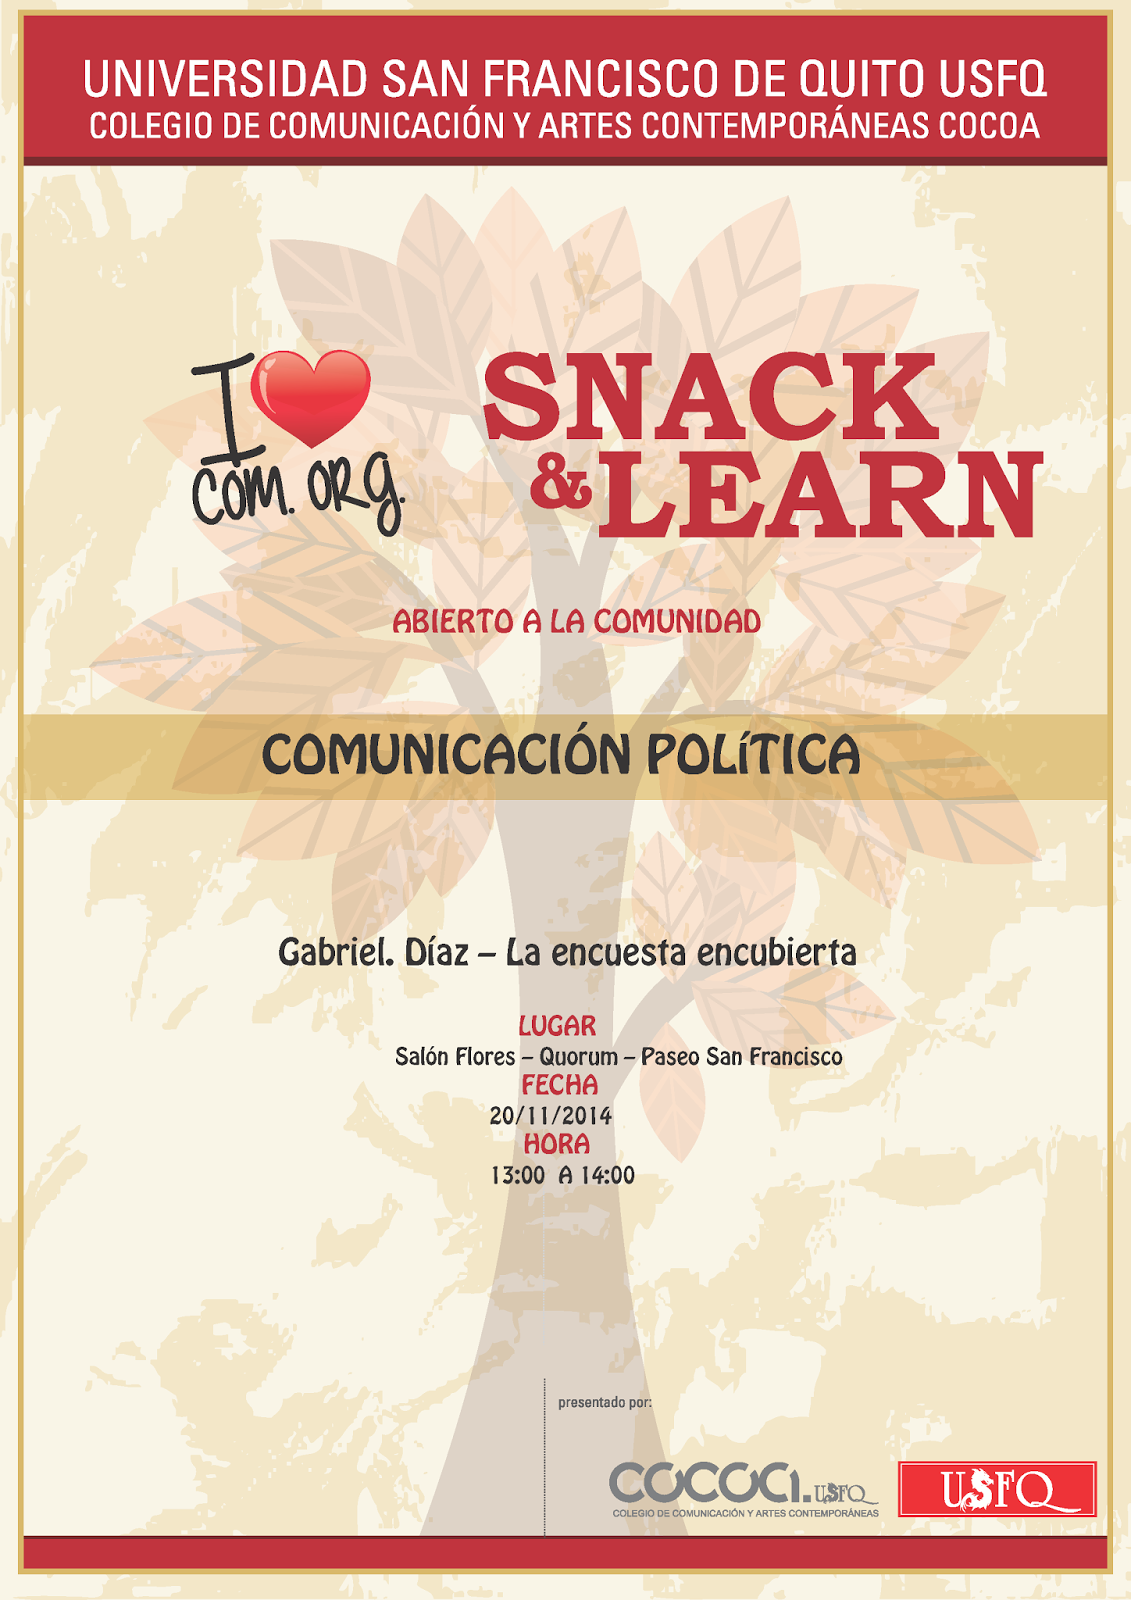 Última conferencia de Snack & Learn: "La encuesta encubierta". 20 noviembre, 13h00. Salón Flores, Quorum, Paseo San Francisco